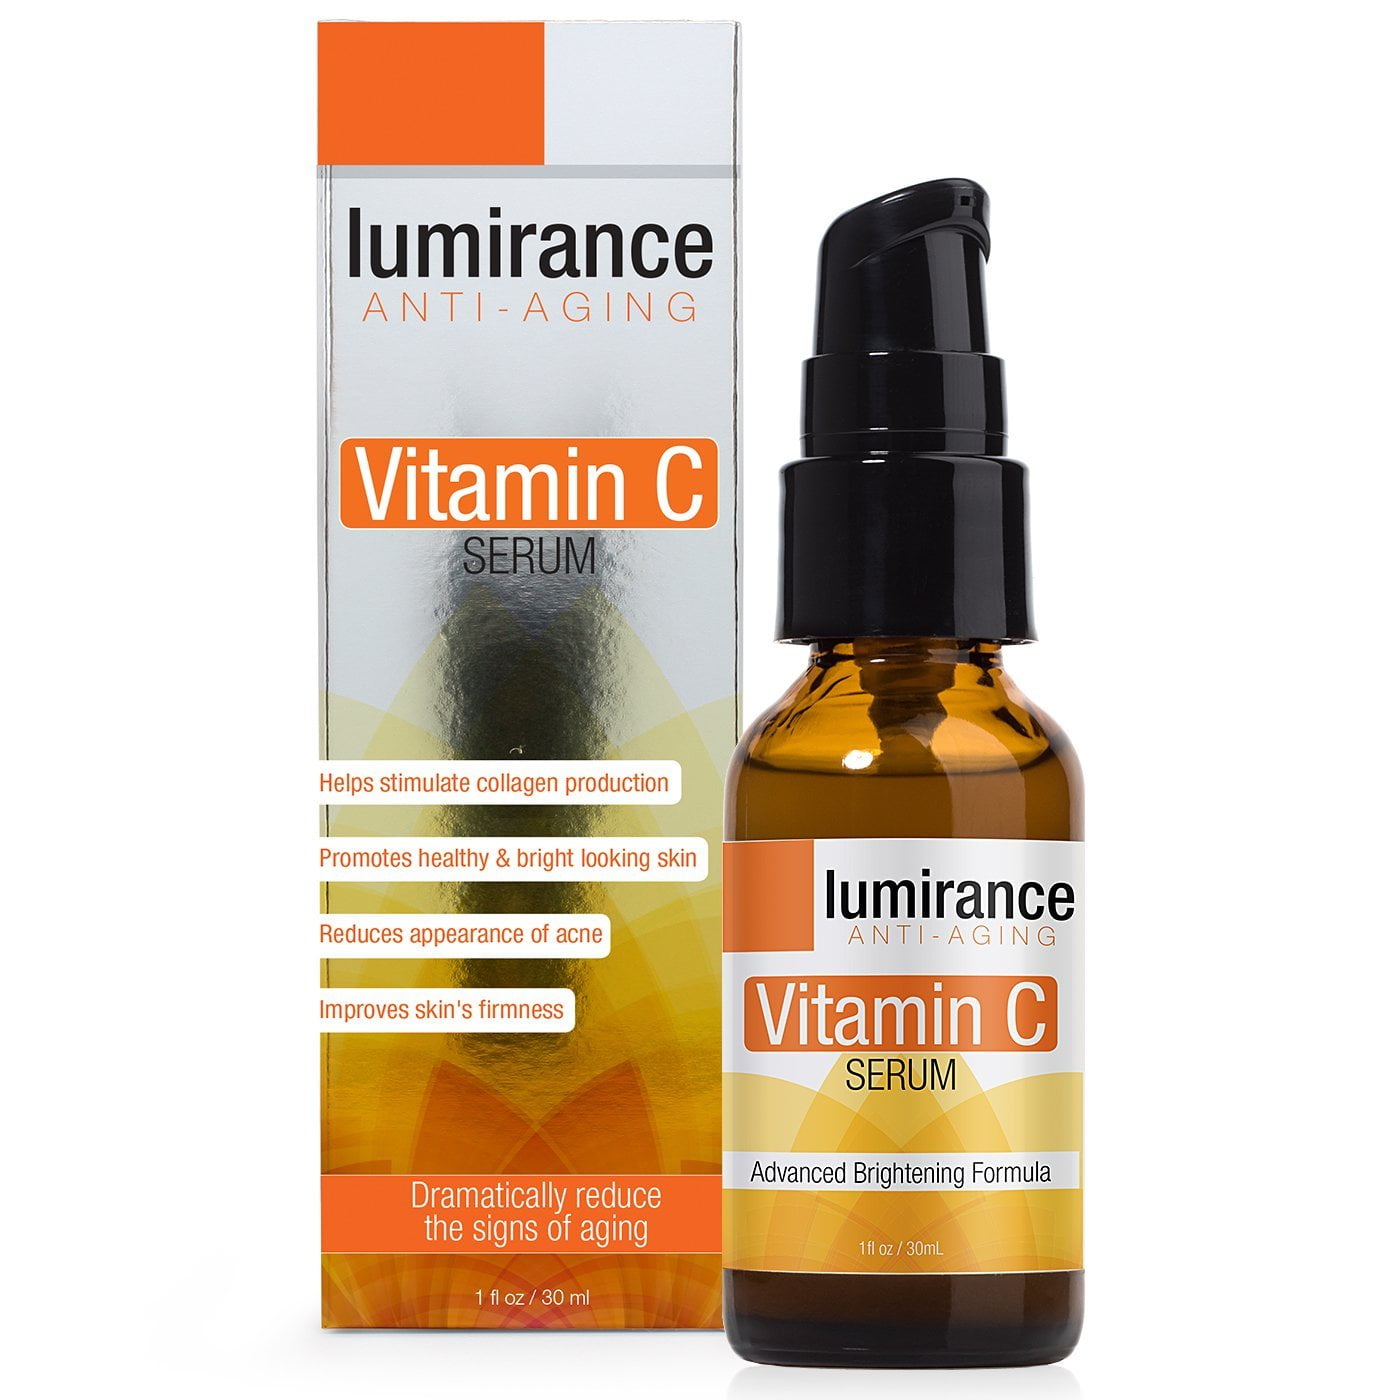 anti aging vitamin c serum)